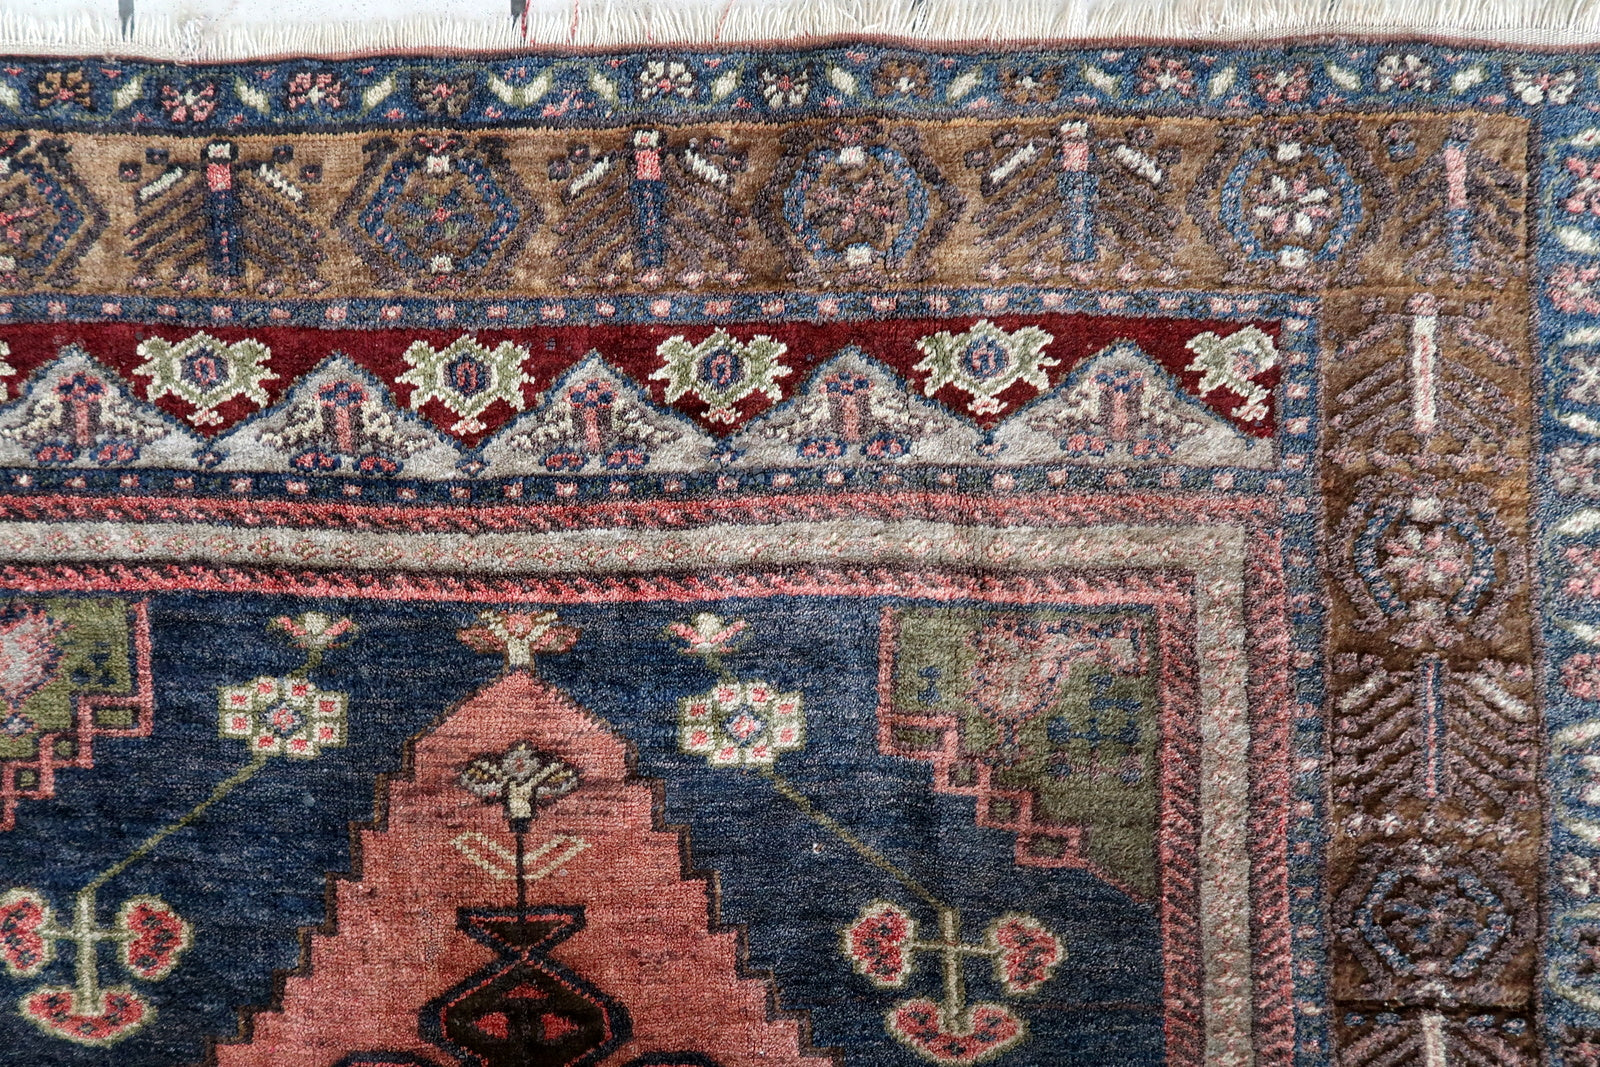 Reverse View of Handmade Anatolian Wool Rug